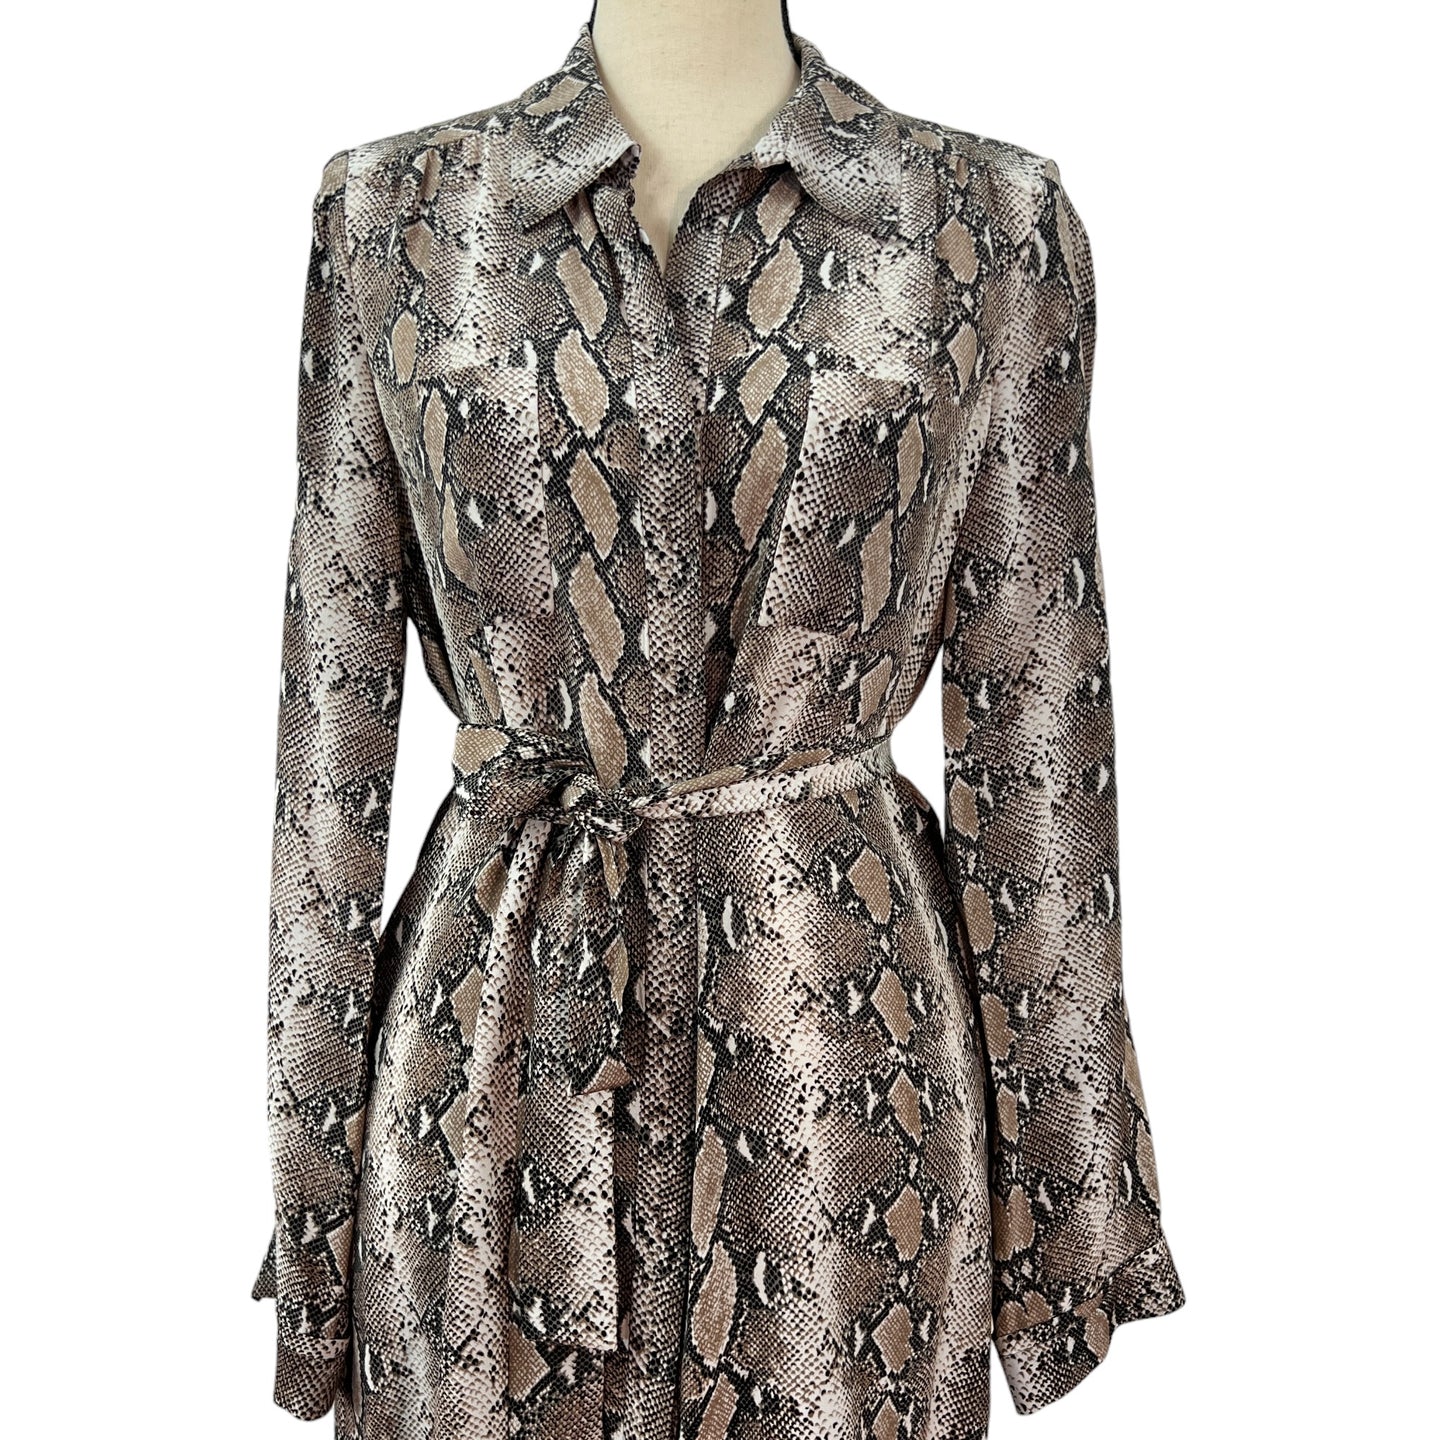 Diane Von Furstenberg 100% Silk Shirt Dress Size 10 